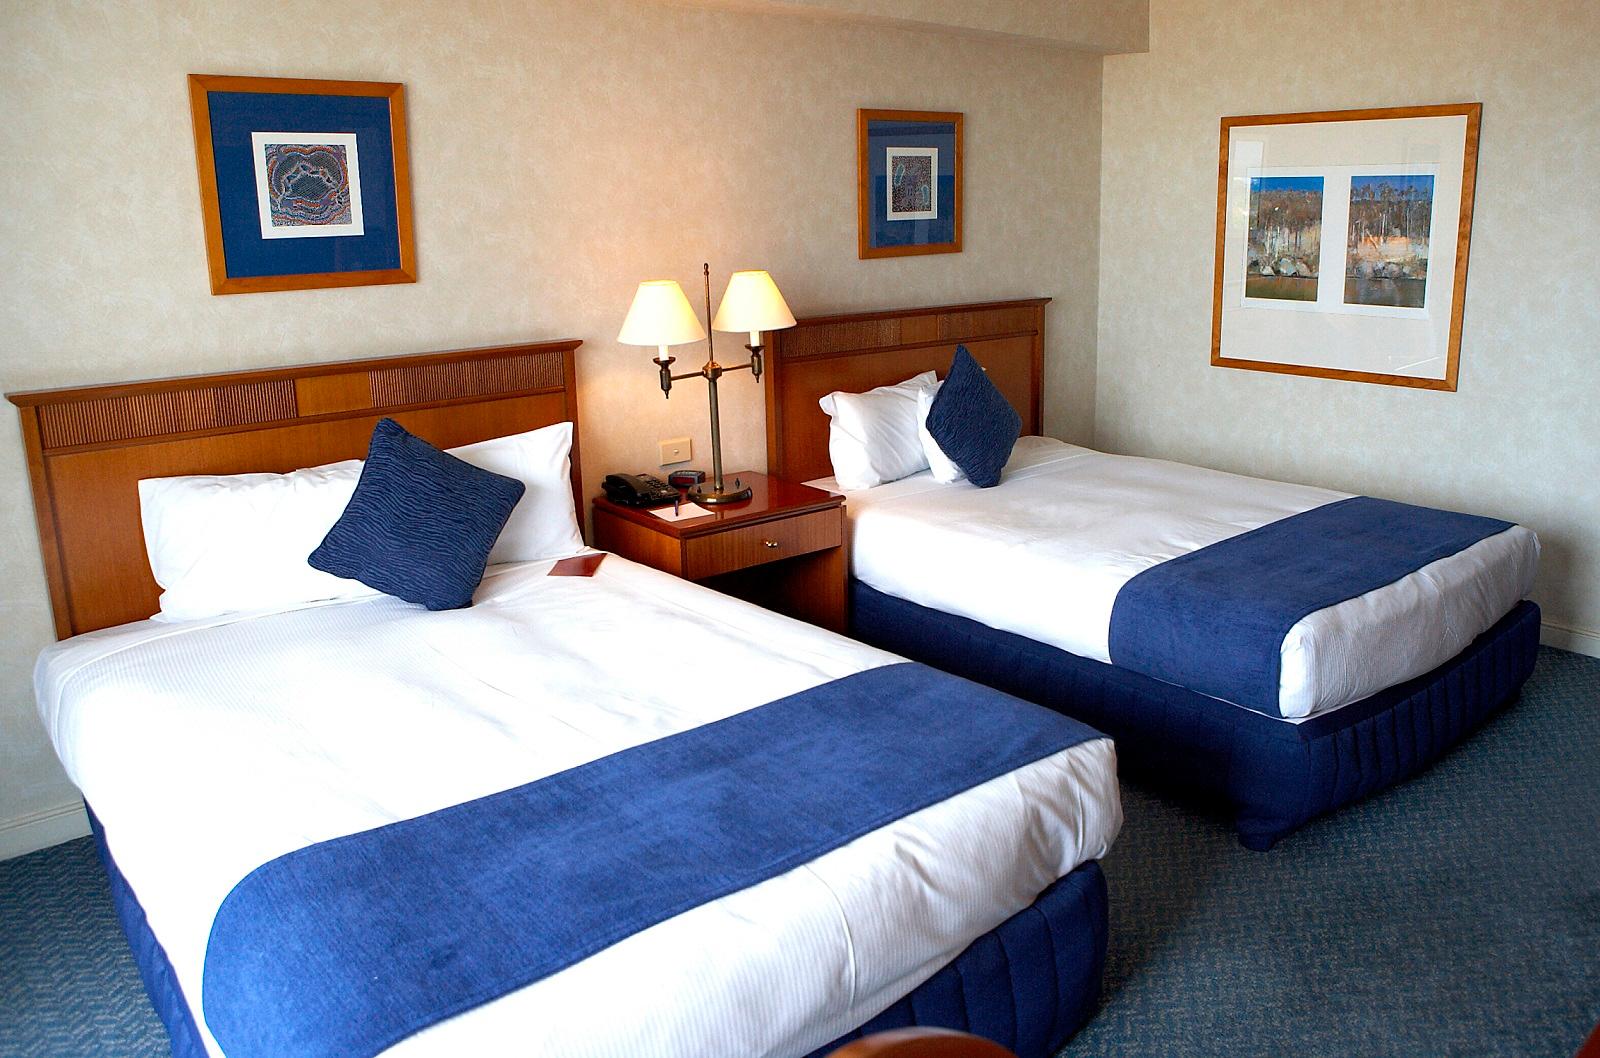 Bayview suite at Novotel Sydney Brighton Beach hotel Novotel Sydney Brighton Beach Sydney (02) 9556 5111